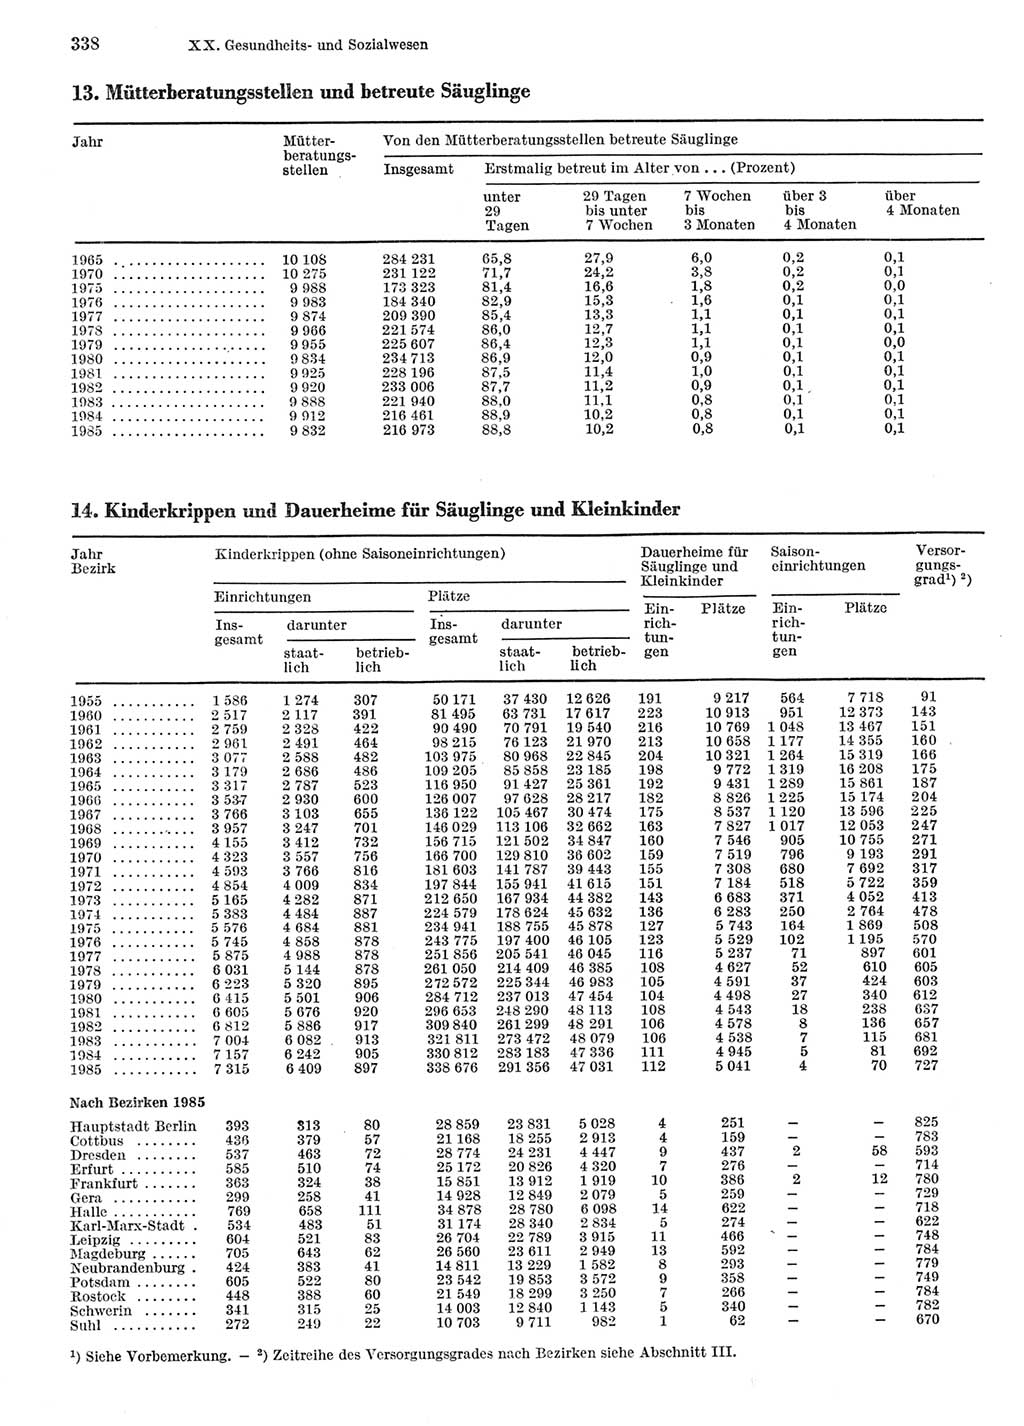 Statistisches Jahrbuch der Deutschen Demokratischen Republik (DDR) 1986, Seite 338 (Stat. Jb. DDR 1986, S. 338)